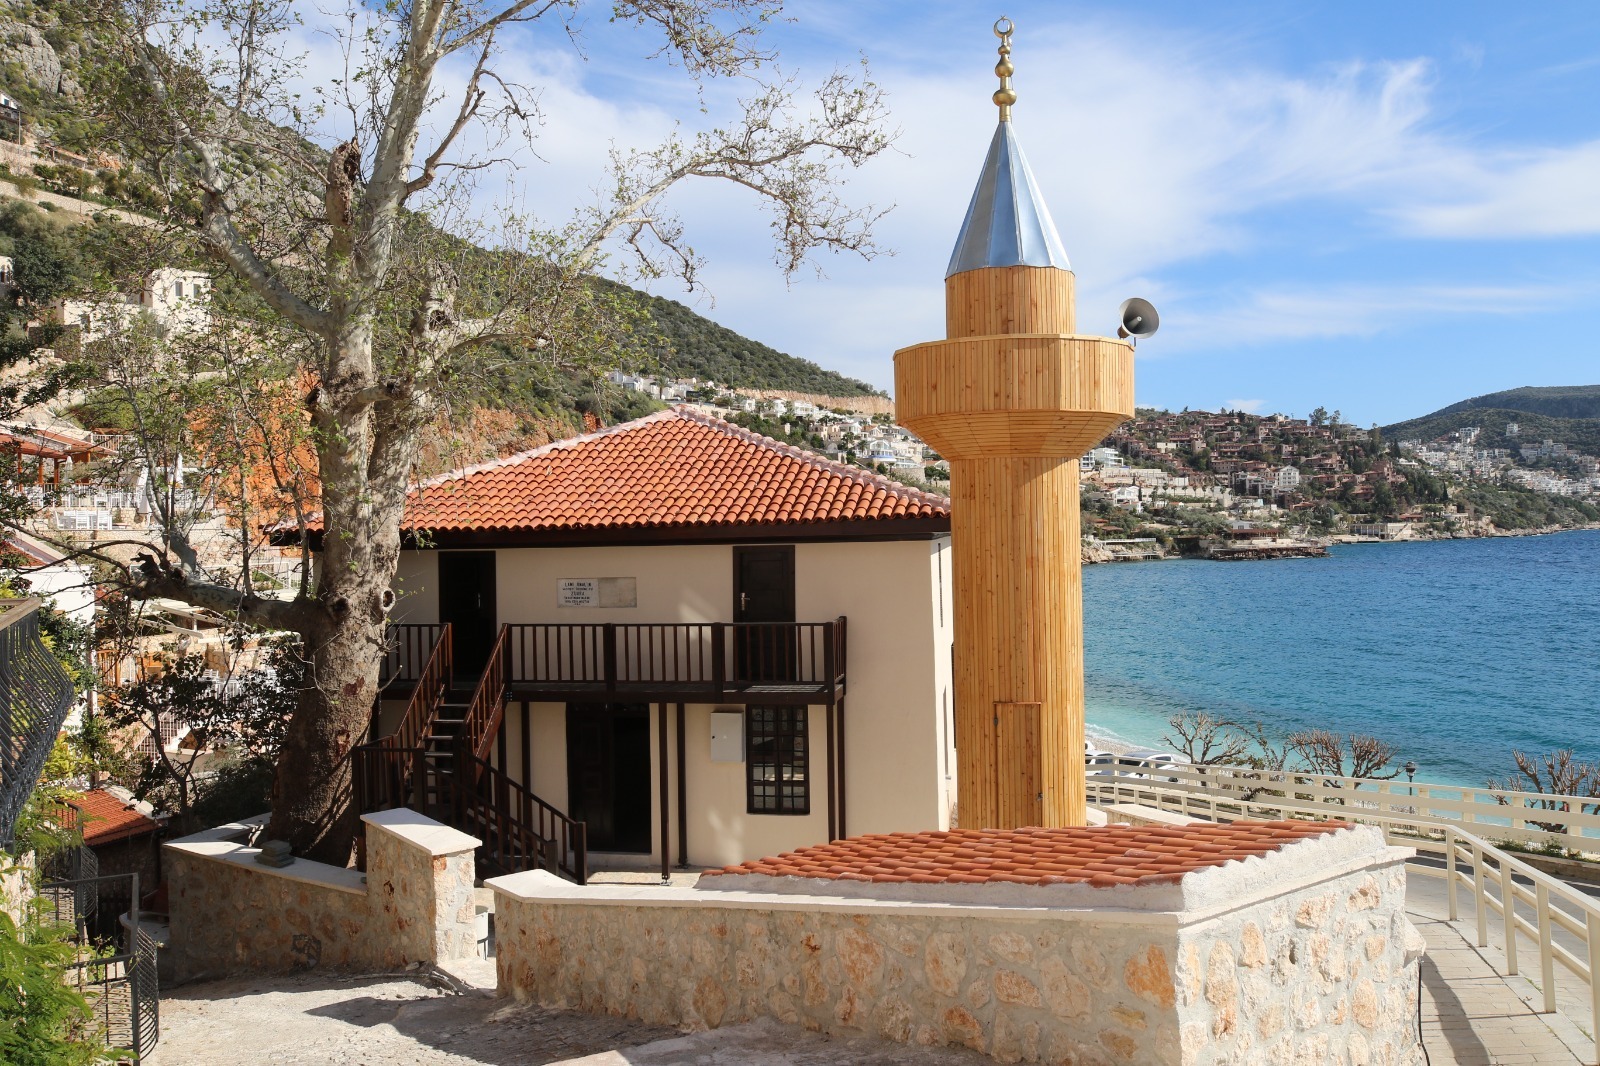 Lami Bey Camii’nin restorasyonu tamamlandı